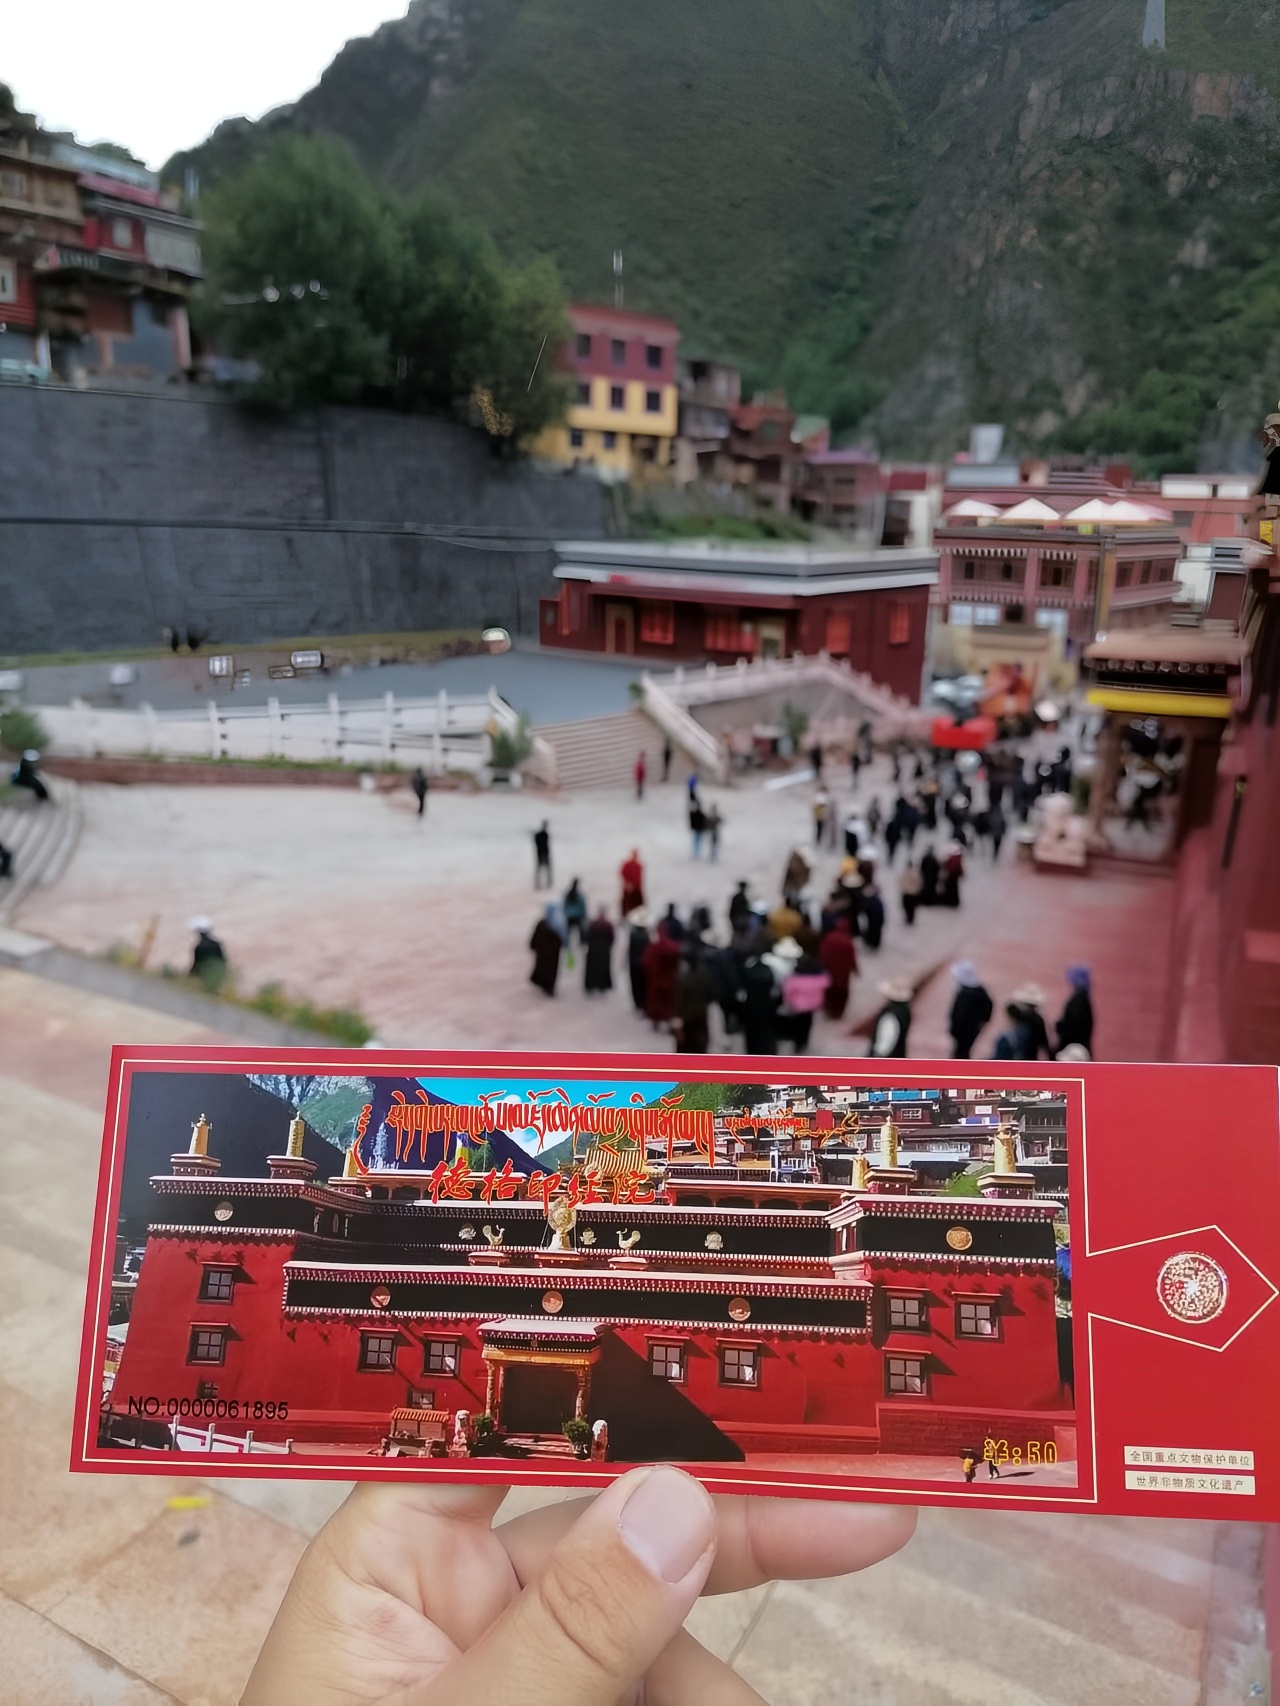 #轻奢旅行 #发现旅途的色彩 川西北地区著名的藏传佛教寺院，是康巴藏区的文化中心，寺内拥有数十万的木